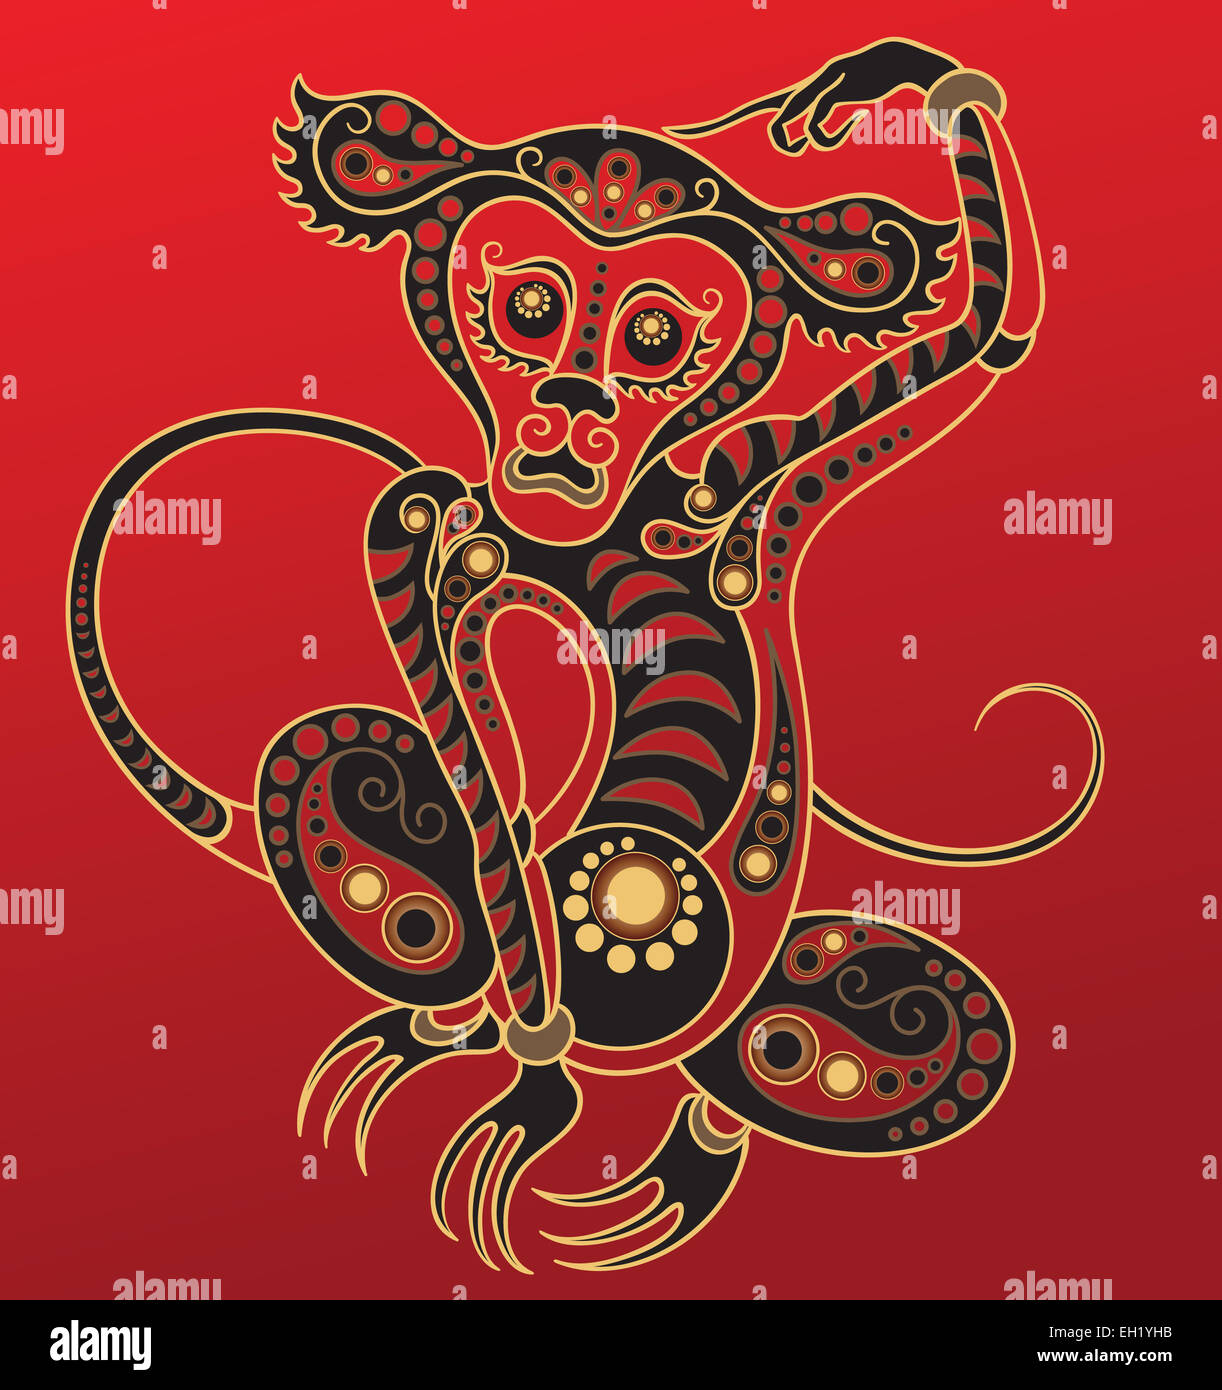 Chinese horoscope. Year of the monkey Stock Photo